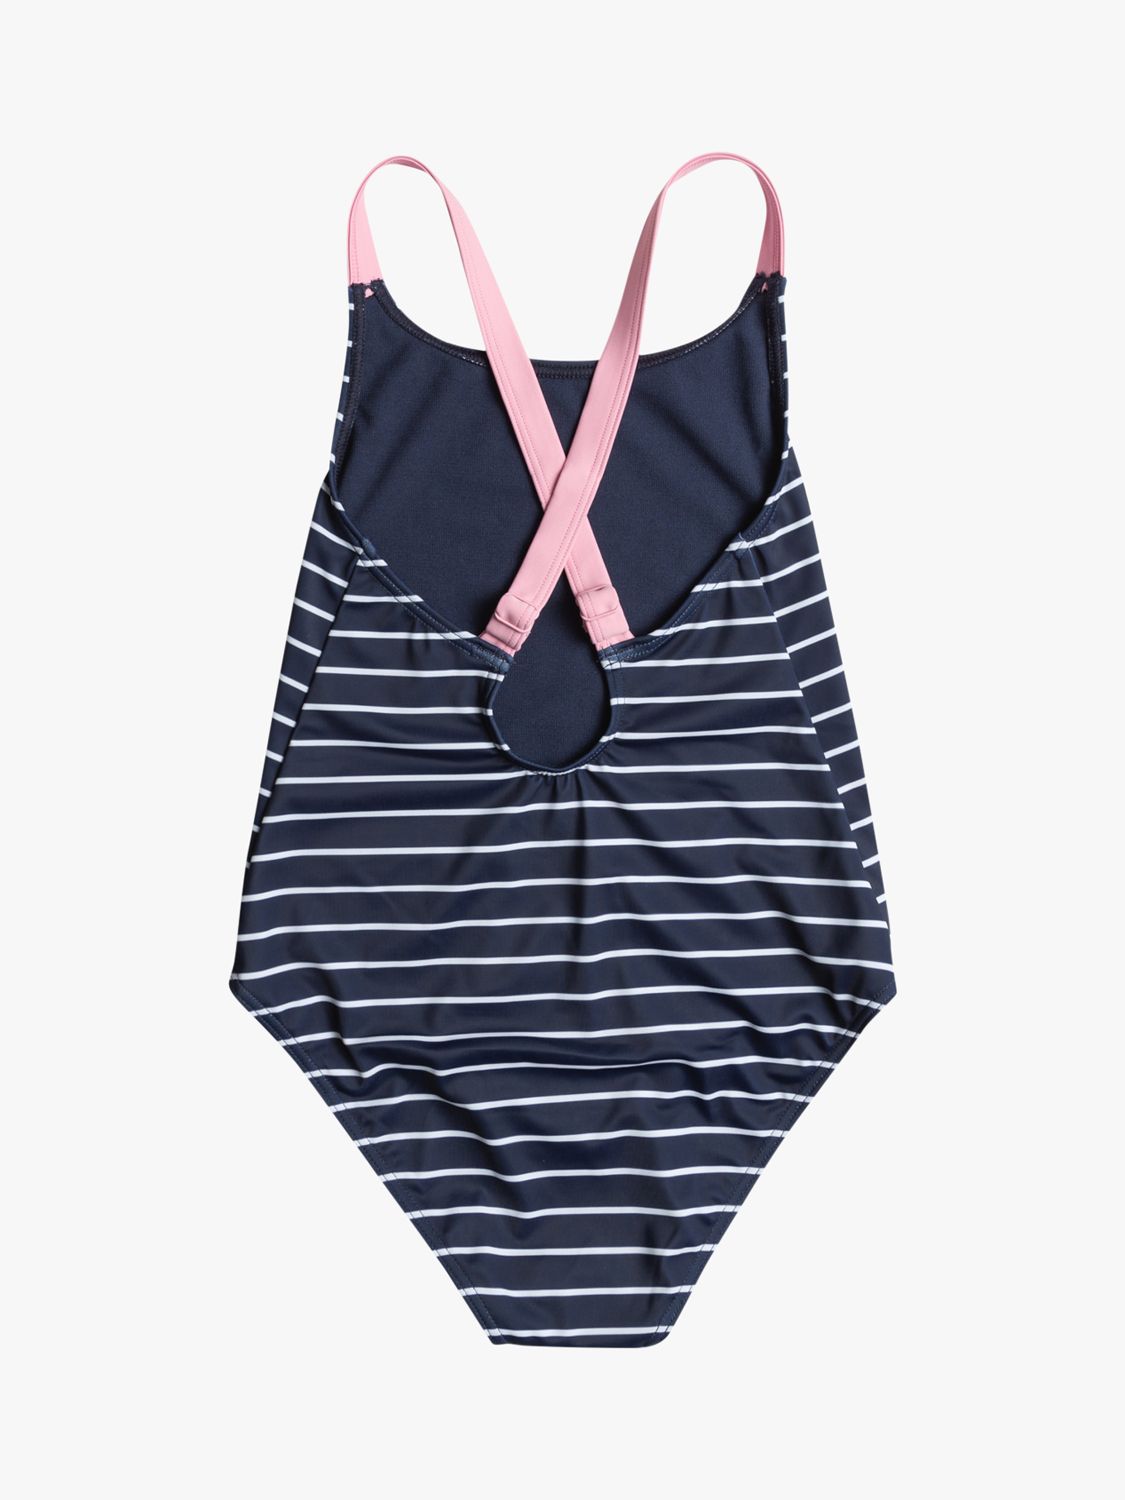 Roxy Kids' Nico Stripe Swimsuit, Naval Academy, 16 years